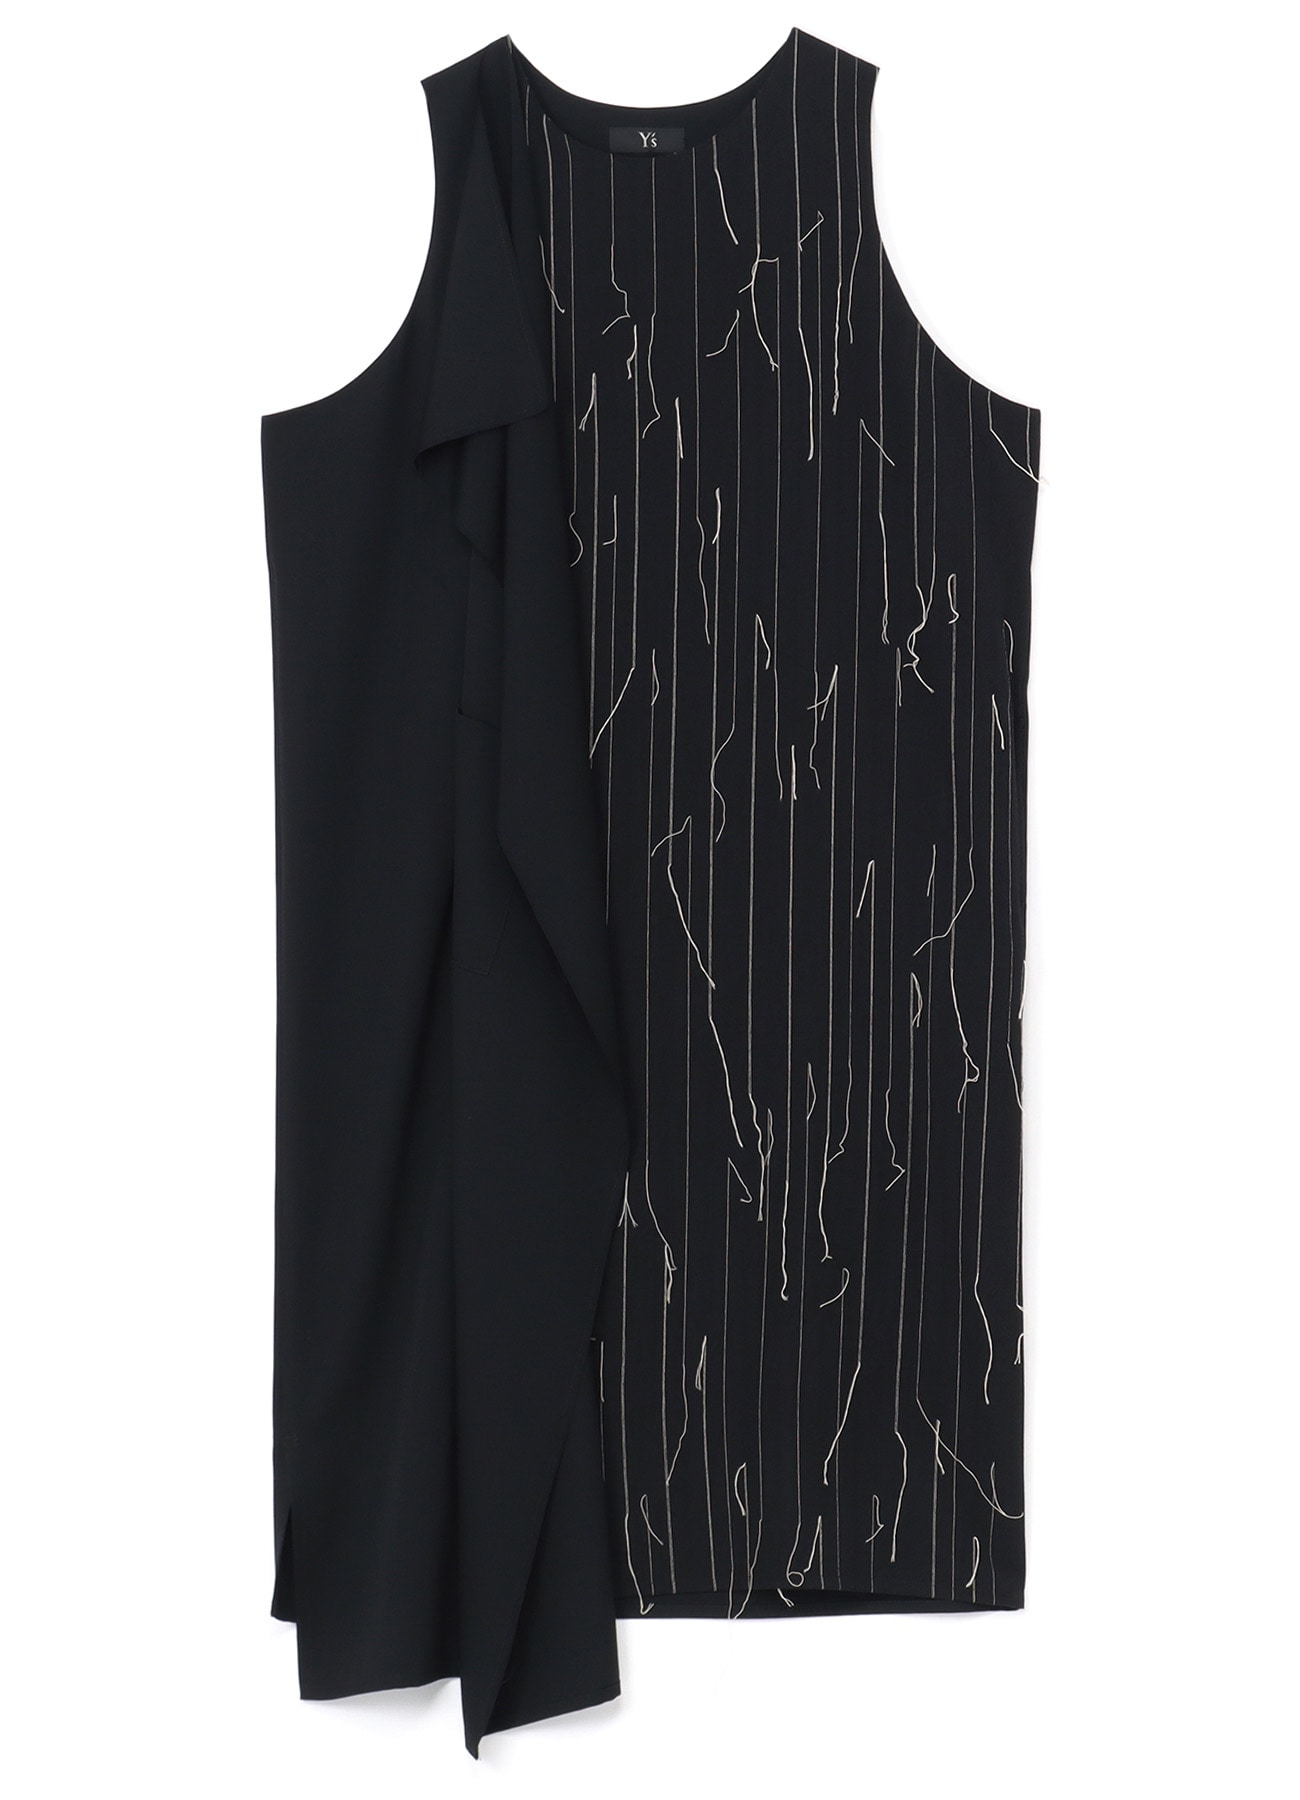 WOOL RIGHT FLAP DRESS(XS Black): Vintage 1.1｜THE SHOP YOHJI YAMAMOTO